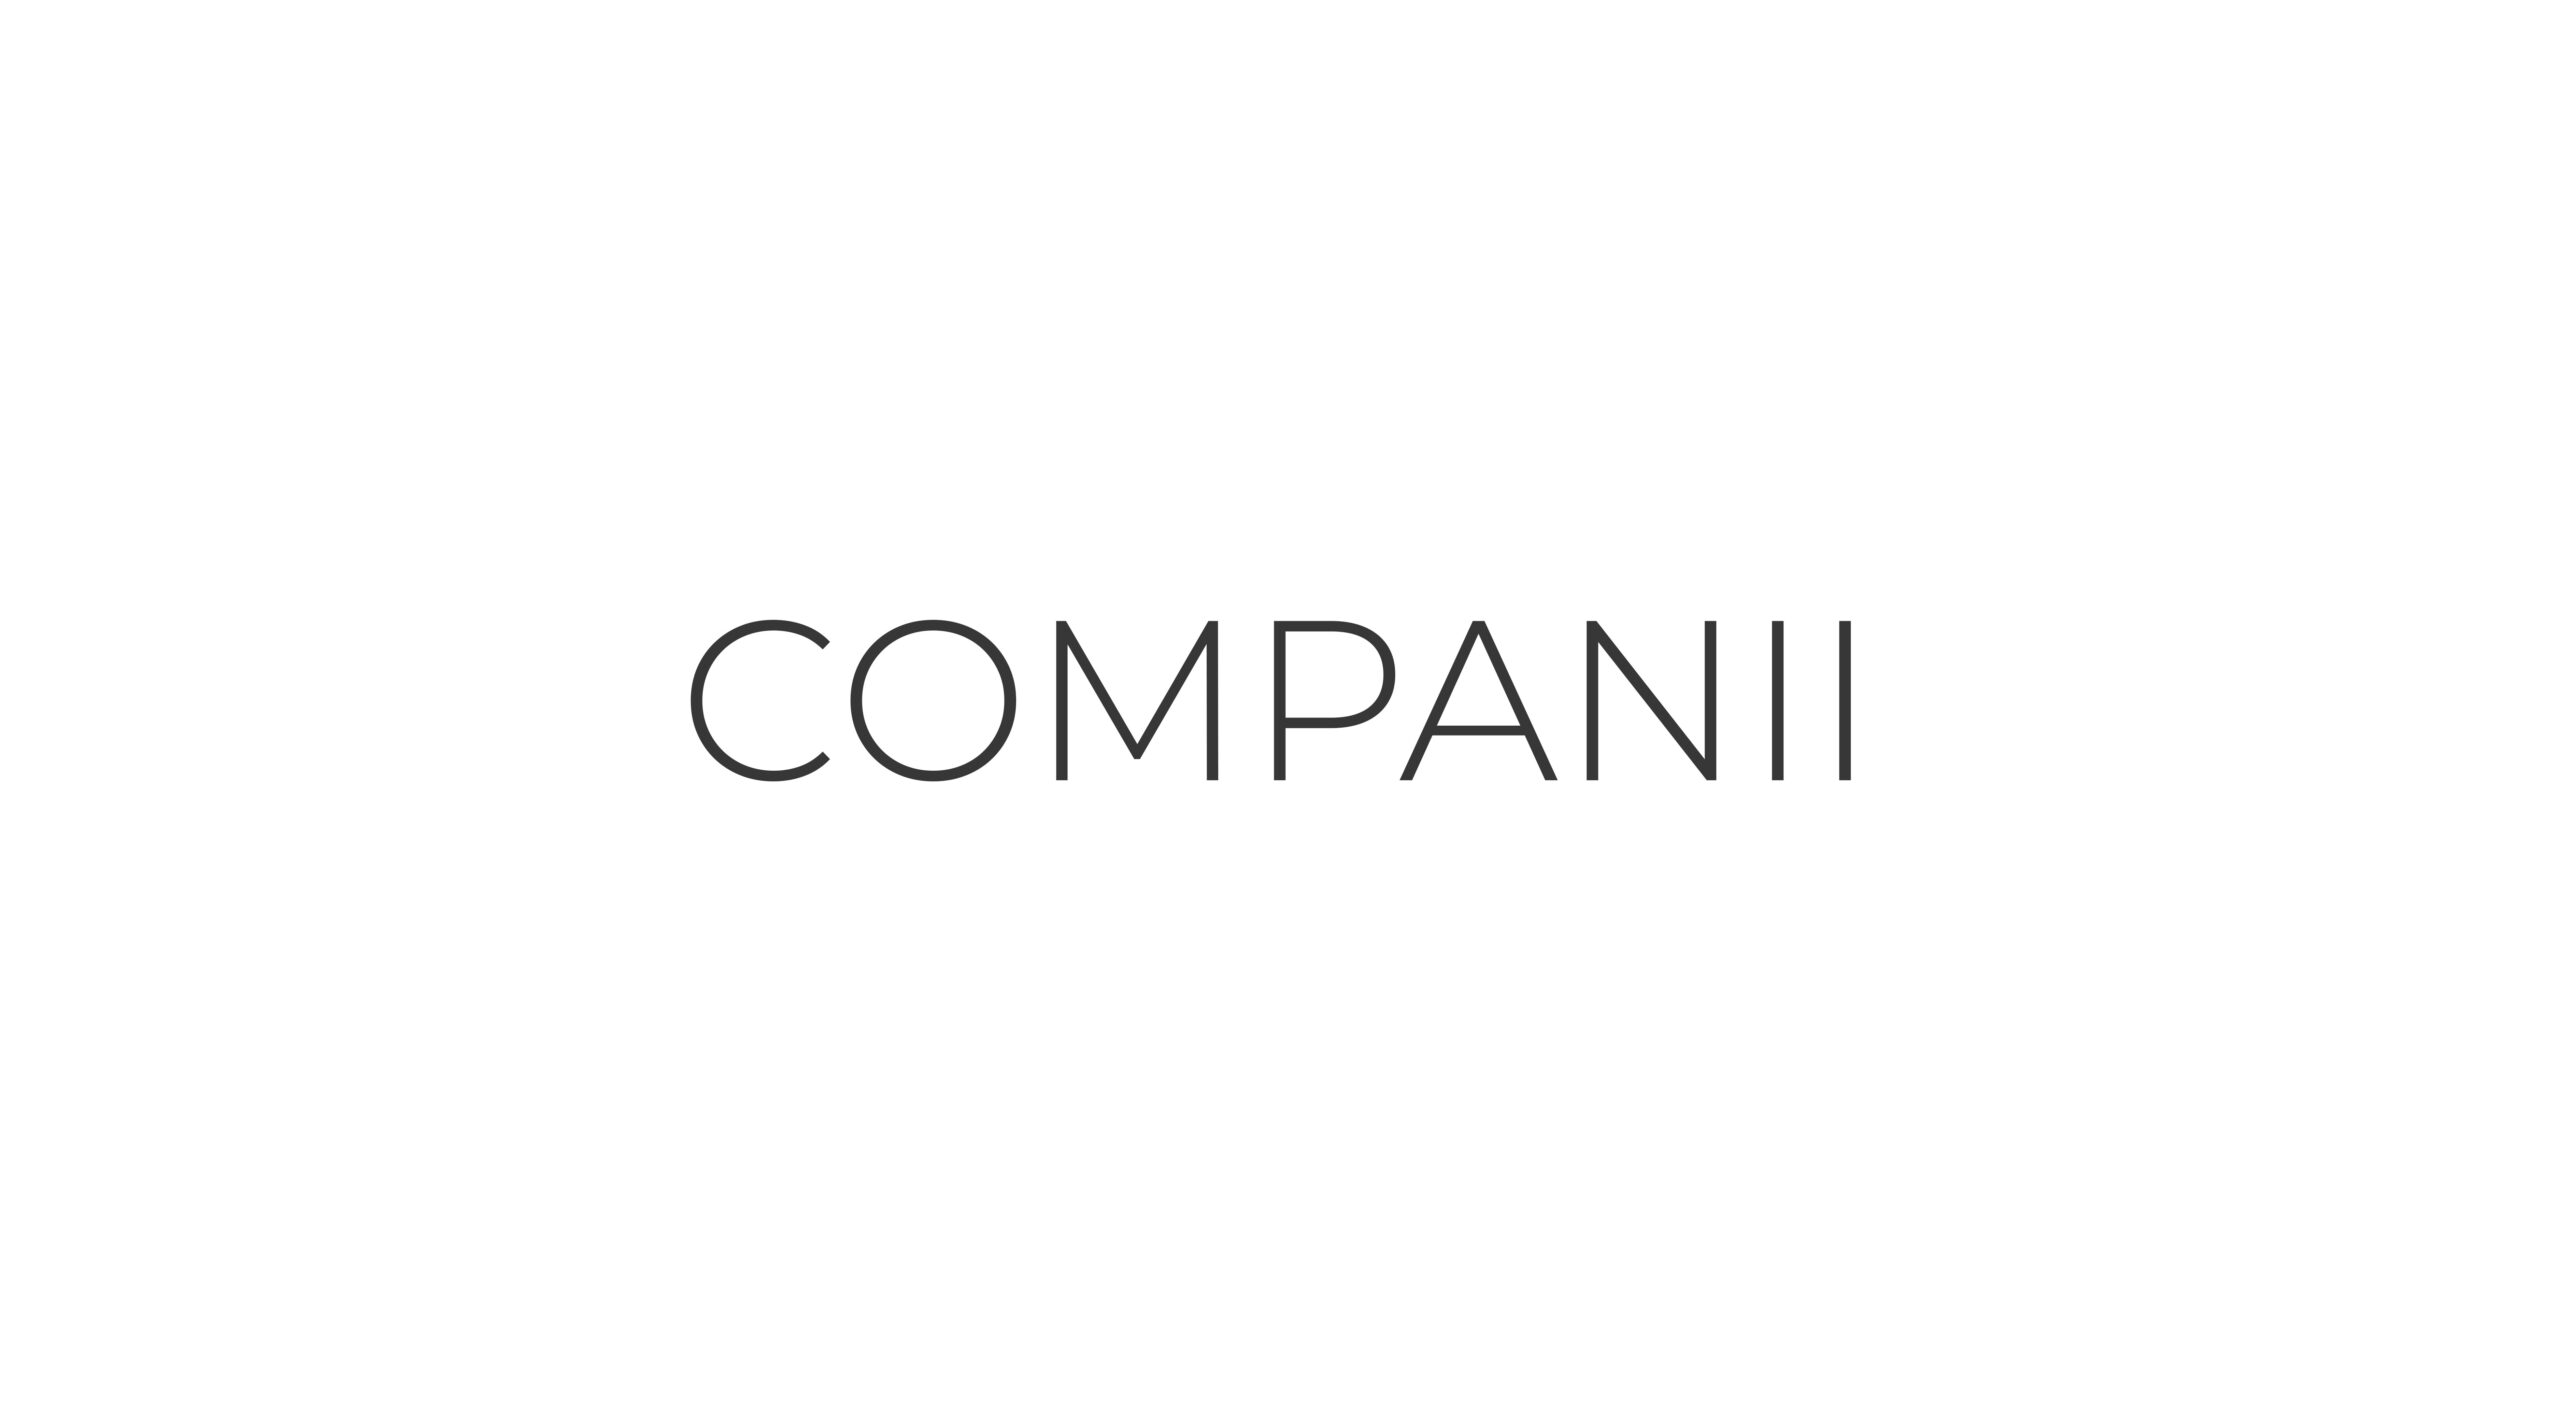 Companii logo